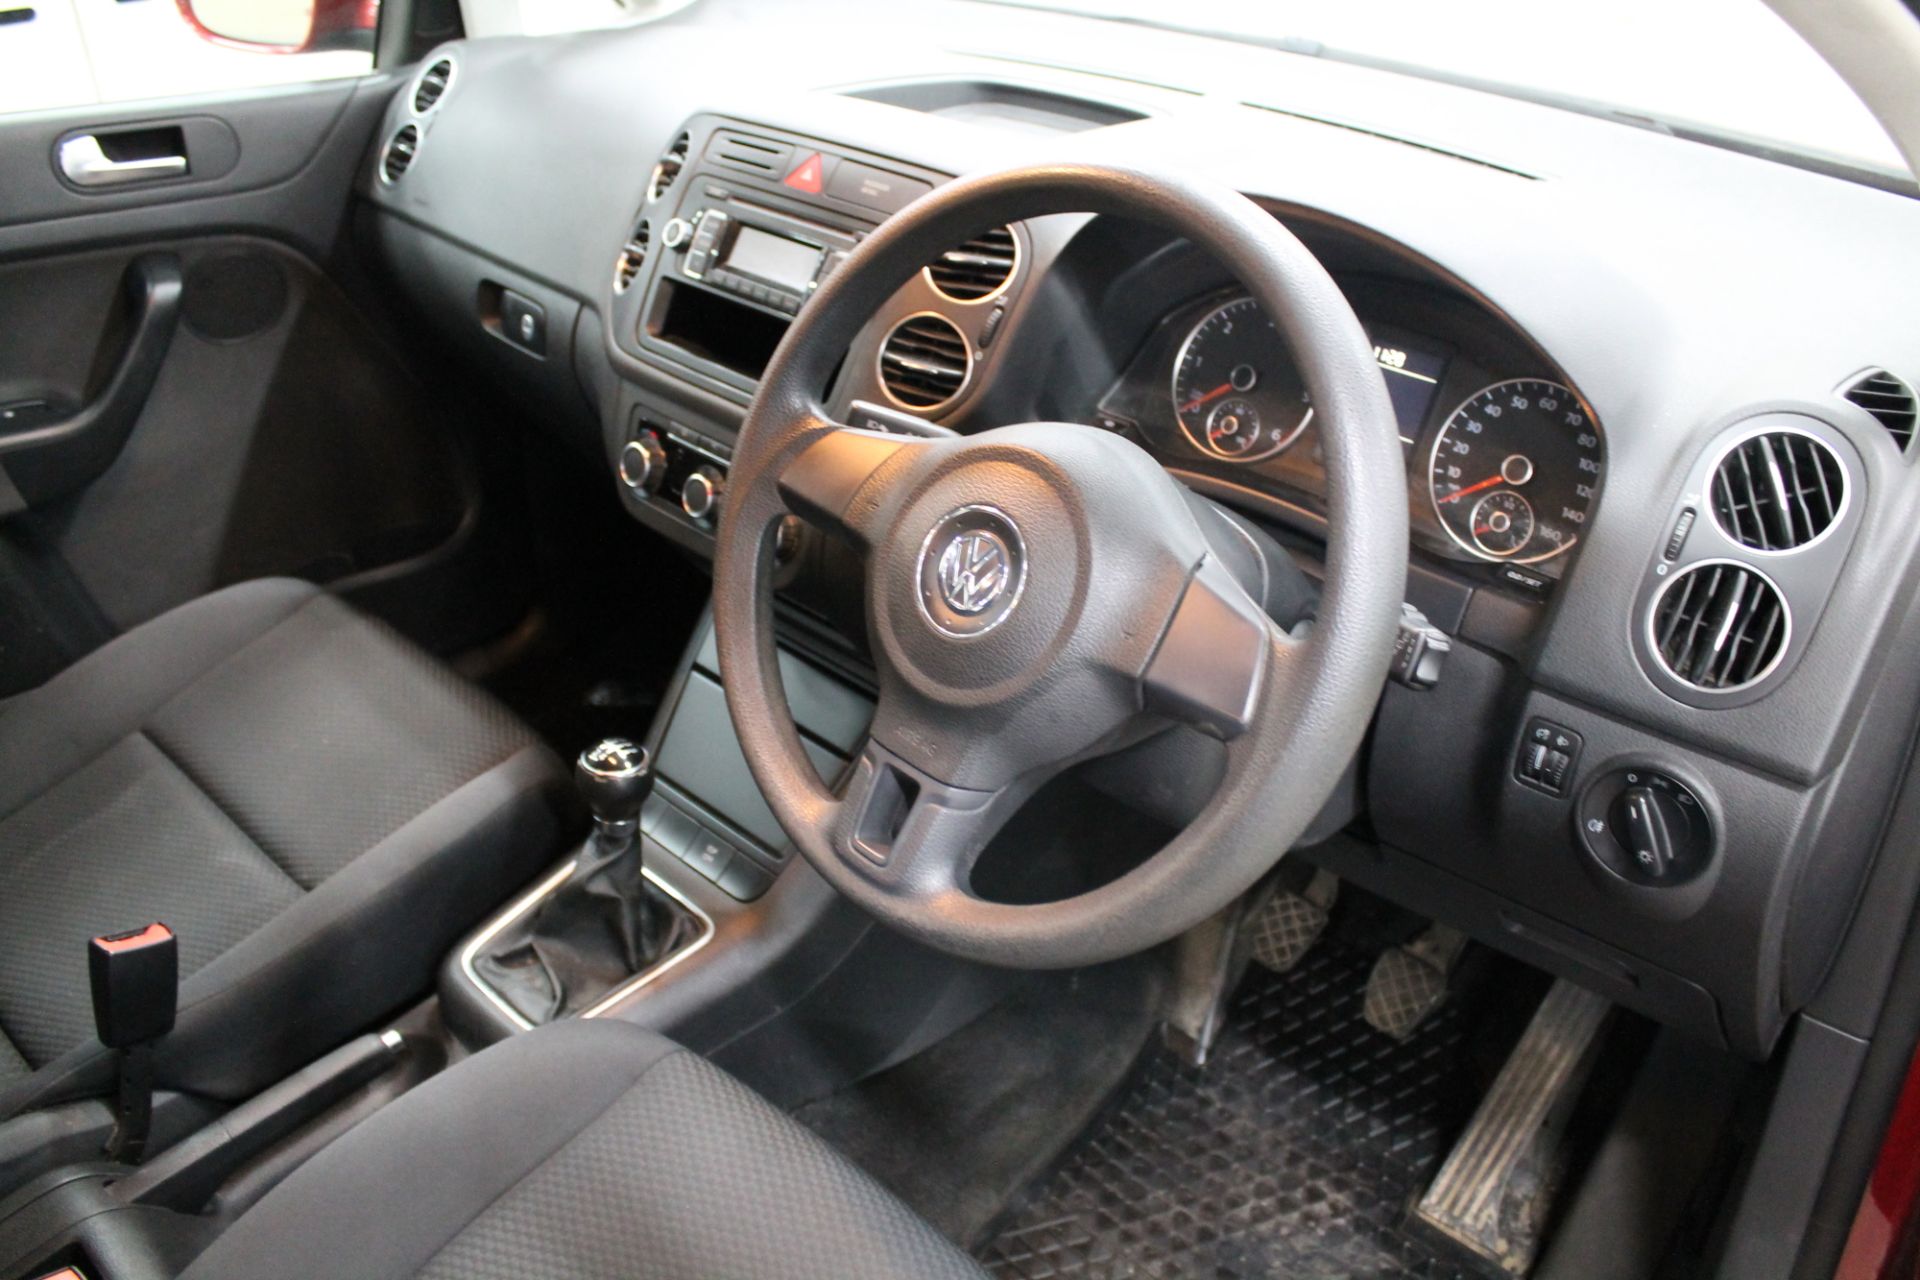 Volkswagen Golf Plus S Tdi - 1600cc 5 Door - Image 6 of 14